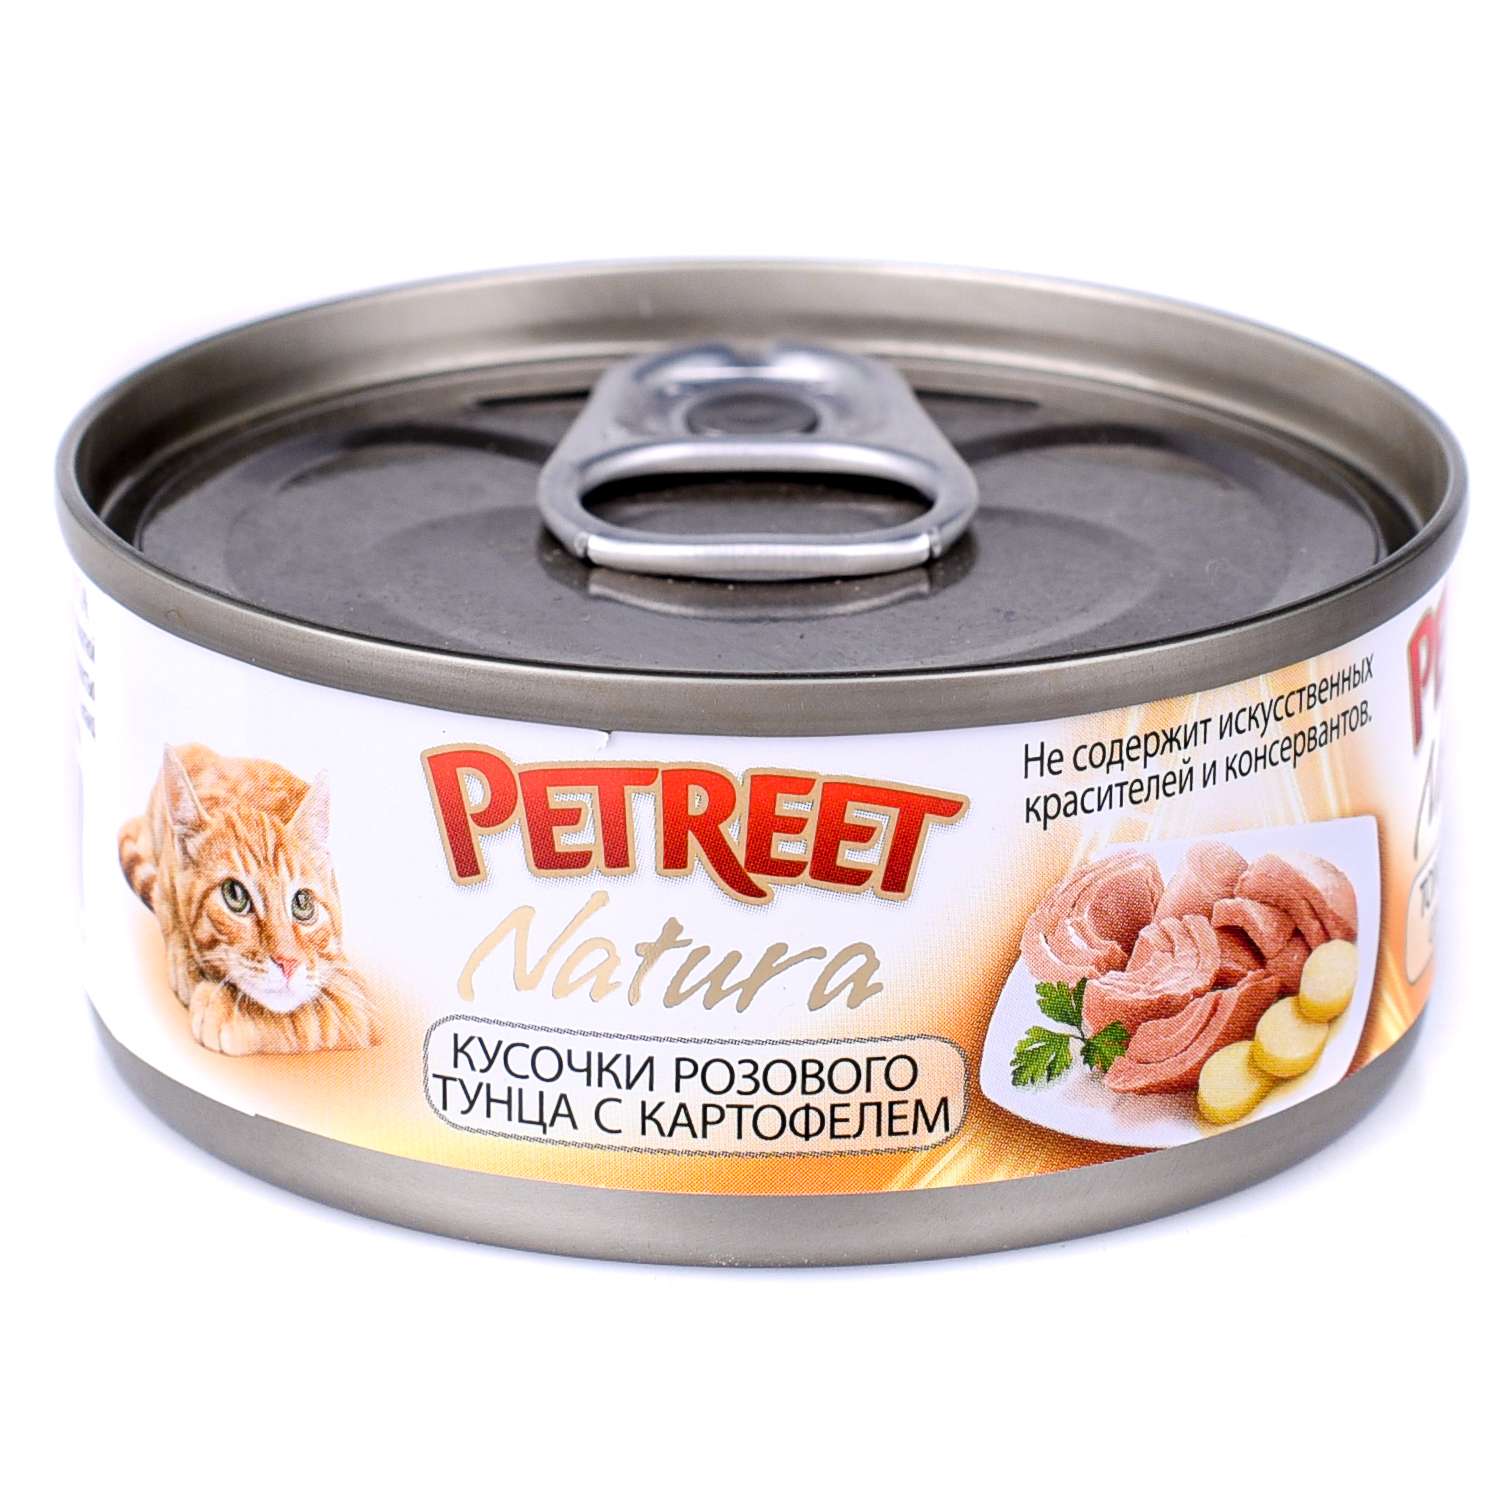 Корм влажный для кошек Petreet 70г кусочки розового тунца с картофелем консервированный - фото 2